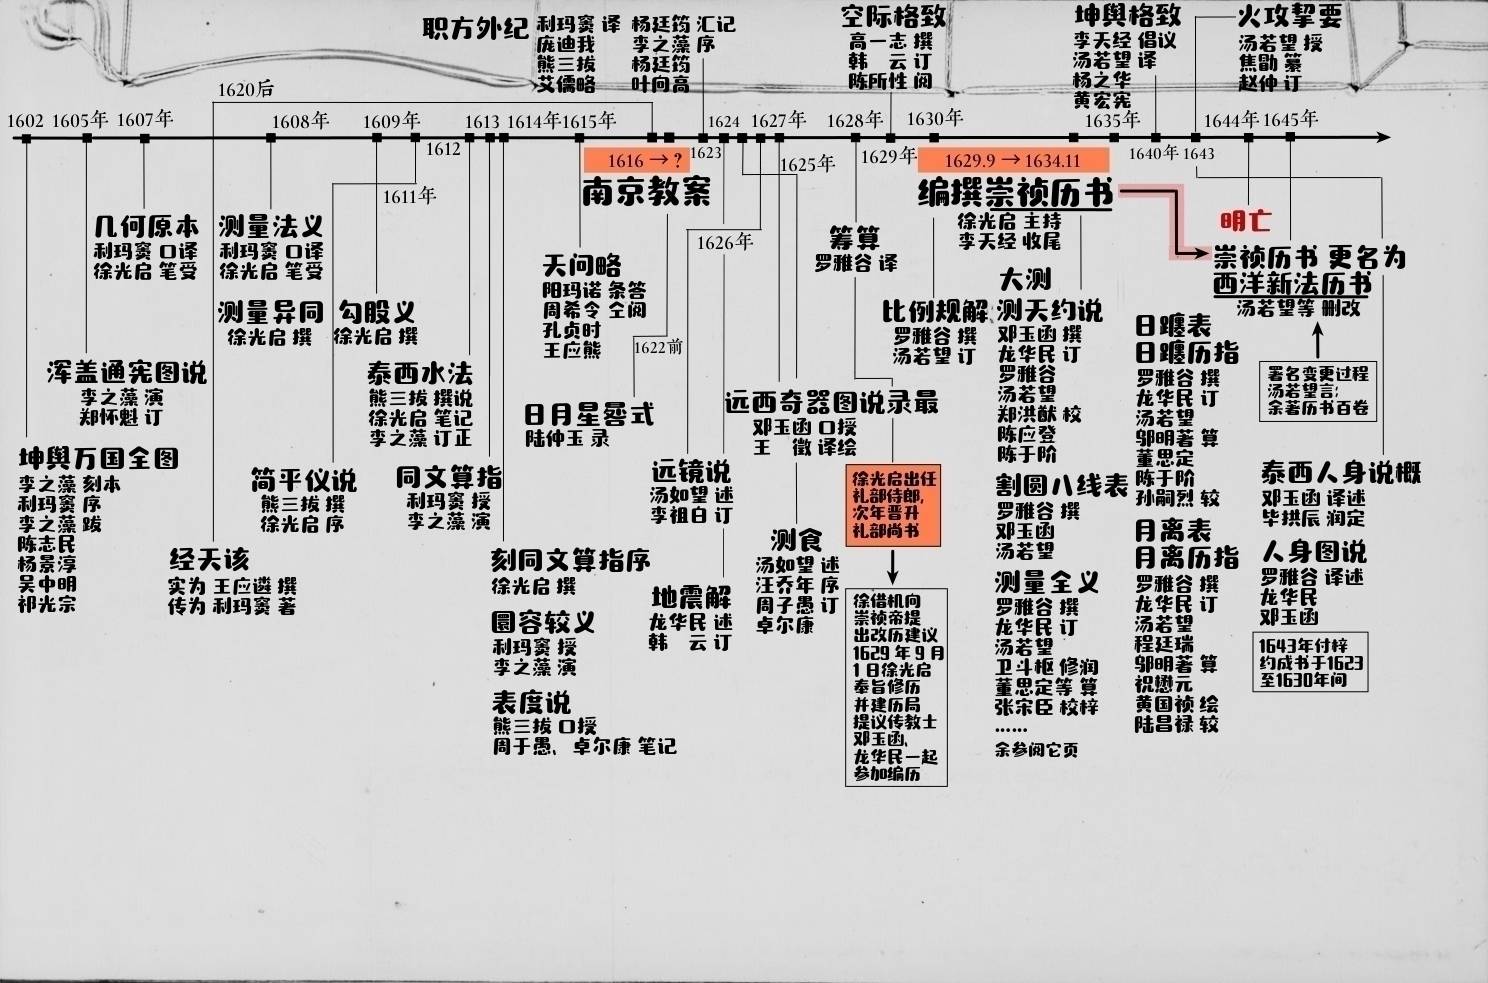 明末传教士署名中文书时序图1600-1645.版本3.0